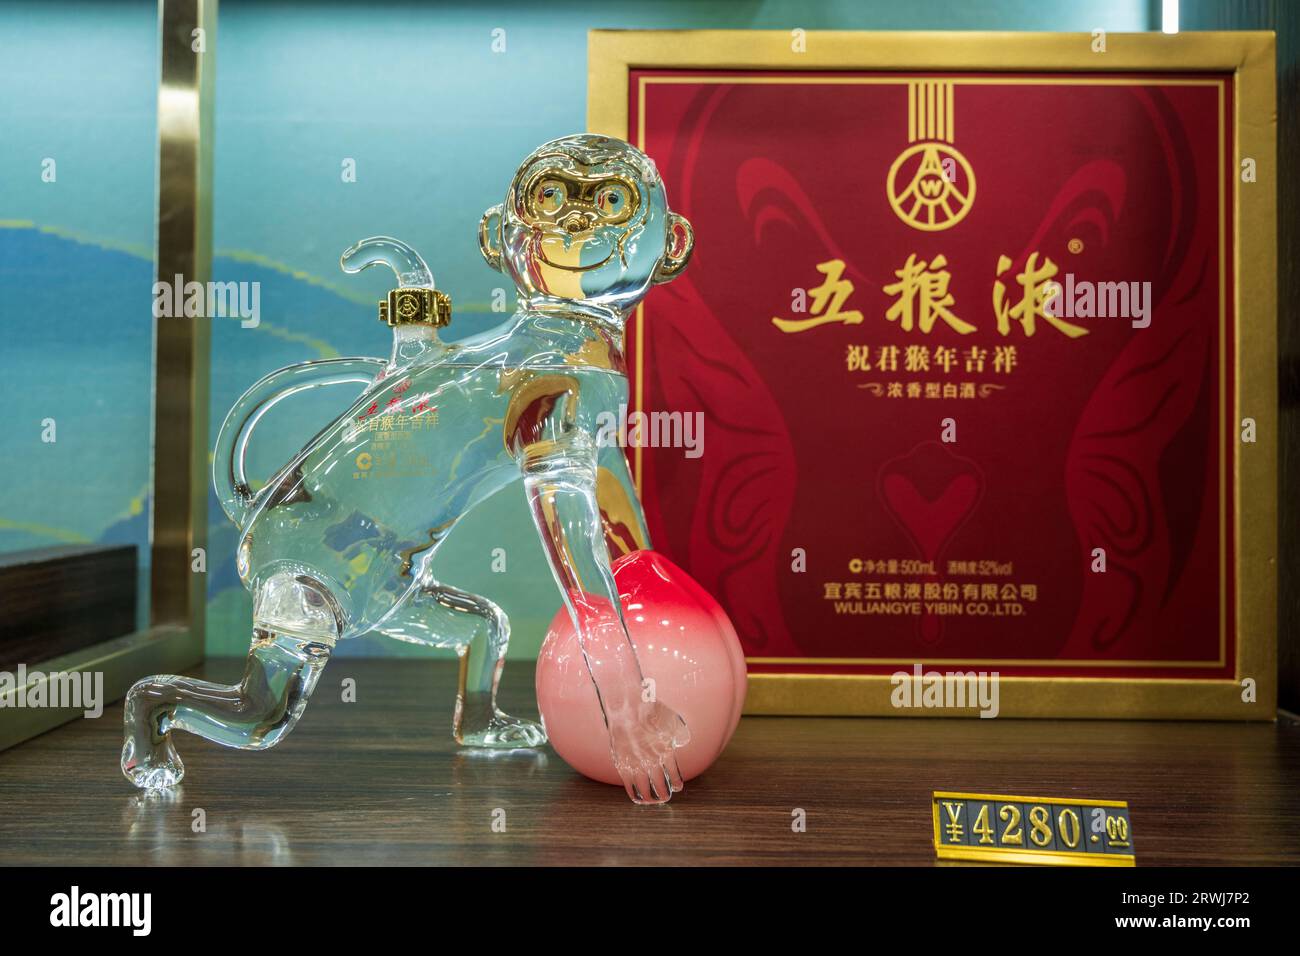 CHENGDU, CHINA - 9. SEPTEMBER 2023 - Eine Vielzahl von Wuliangye-Weinen wird im Wuliangye Cultural Experience Museum in Chengdu, Sichuan Provin, ausgestellt Stockfoto